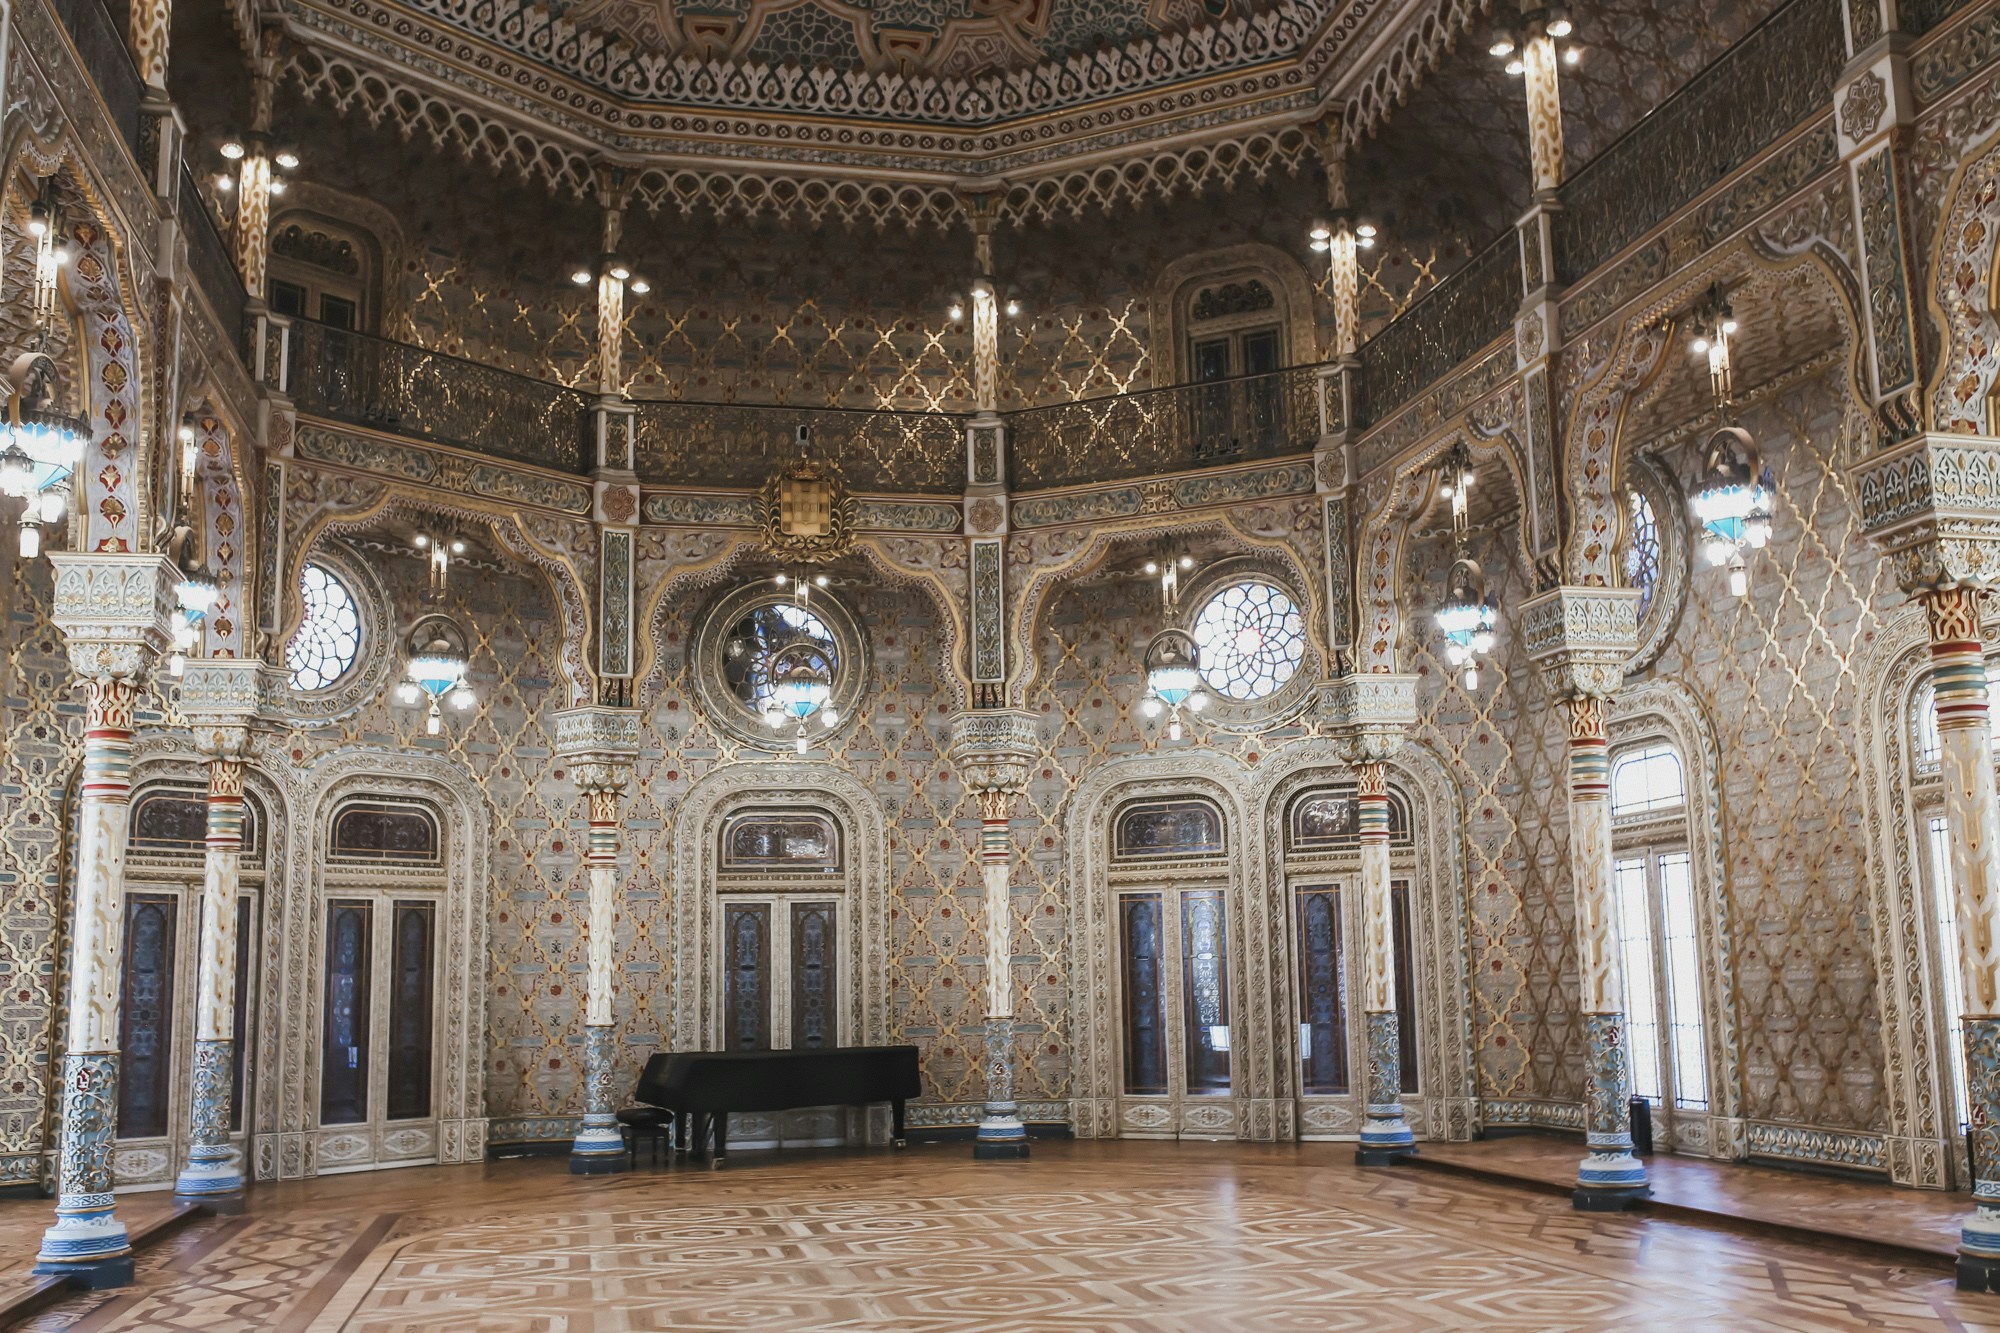 grand arab room in the palacio de bolsa